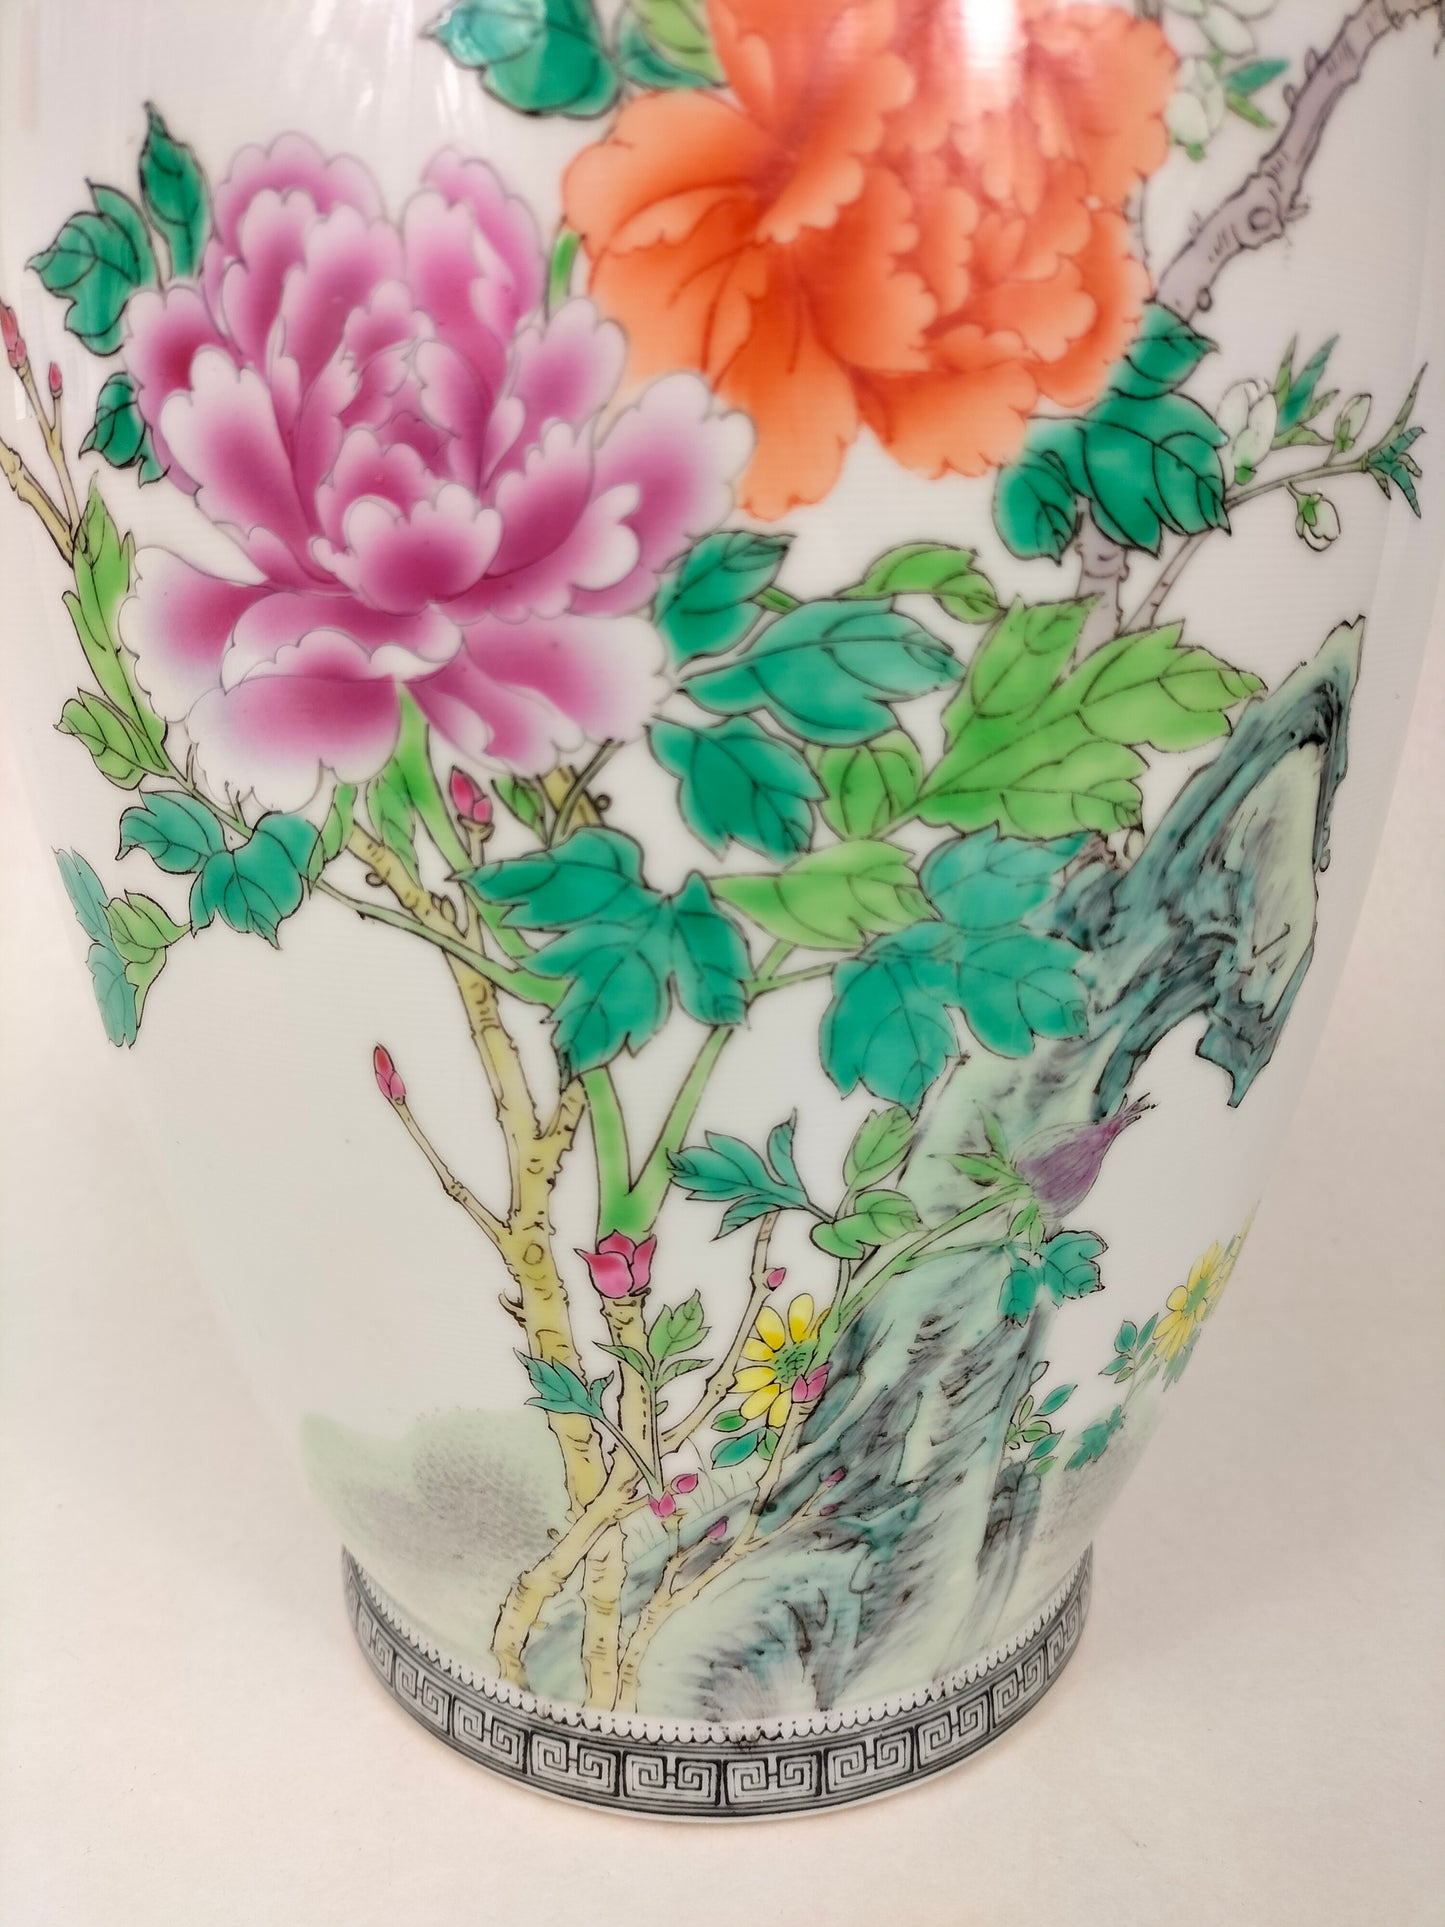 مزهرية وردة عائلية صينية مزينة بالطيور والزهور // جينغدتشن - علامة تشيان لونغ - القرن العشرين